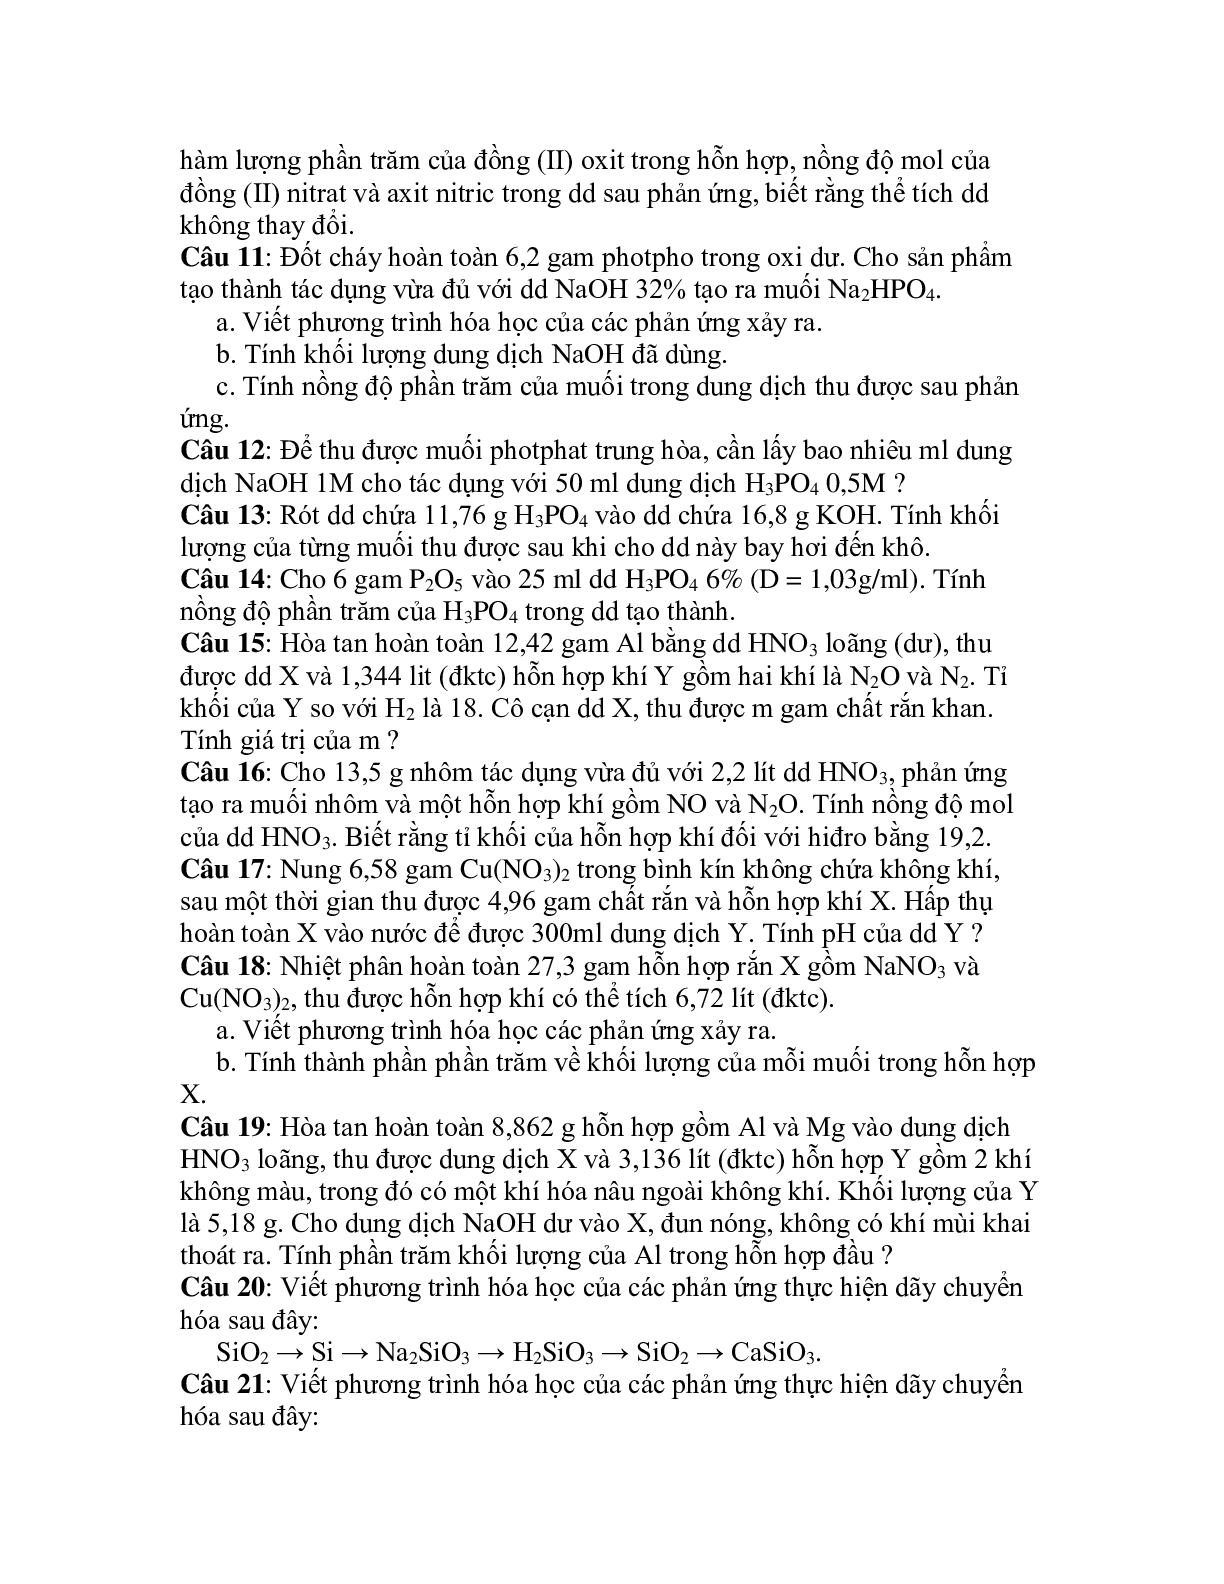 50 bài tập về ôn tập HK 2 lớp 11 chọn lọc (trang 2)